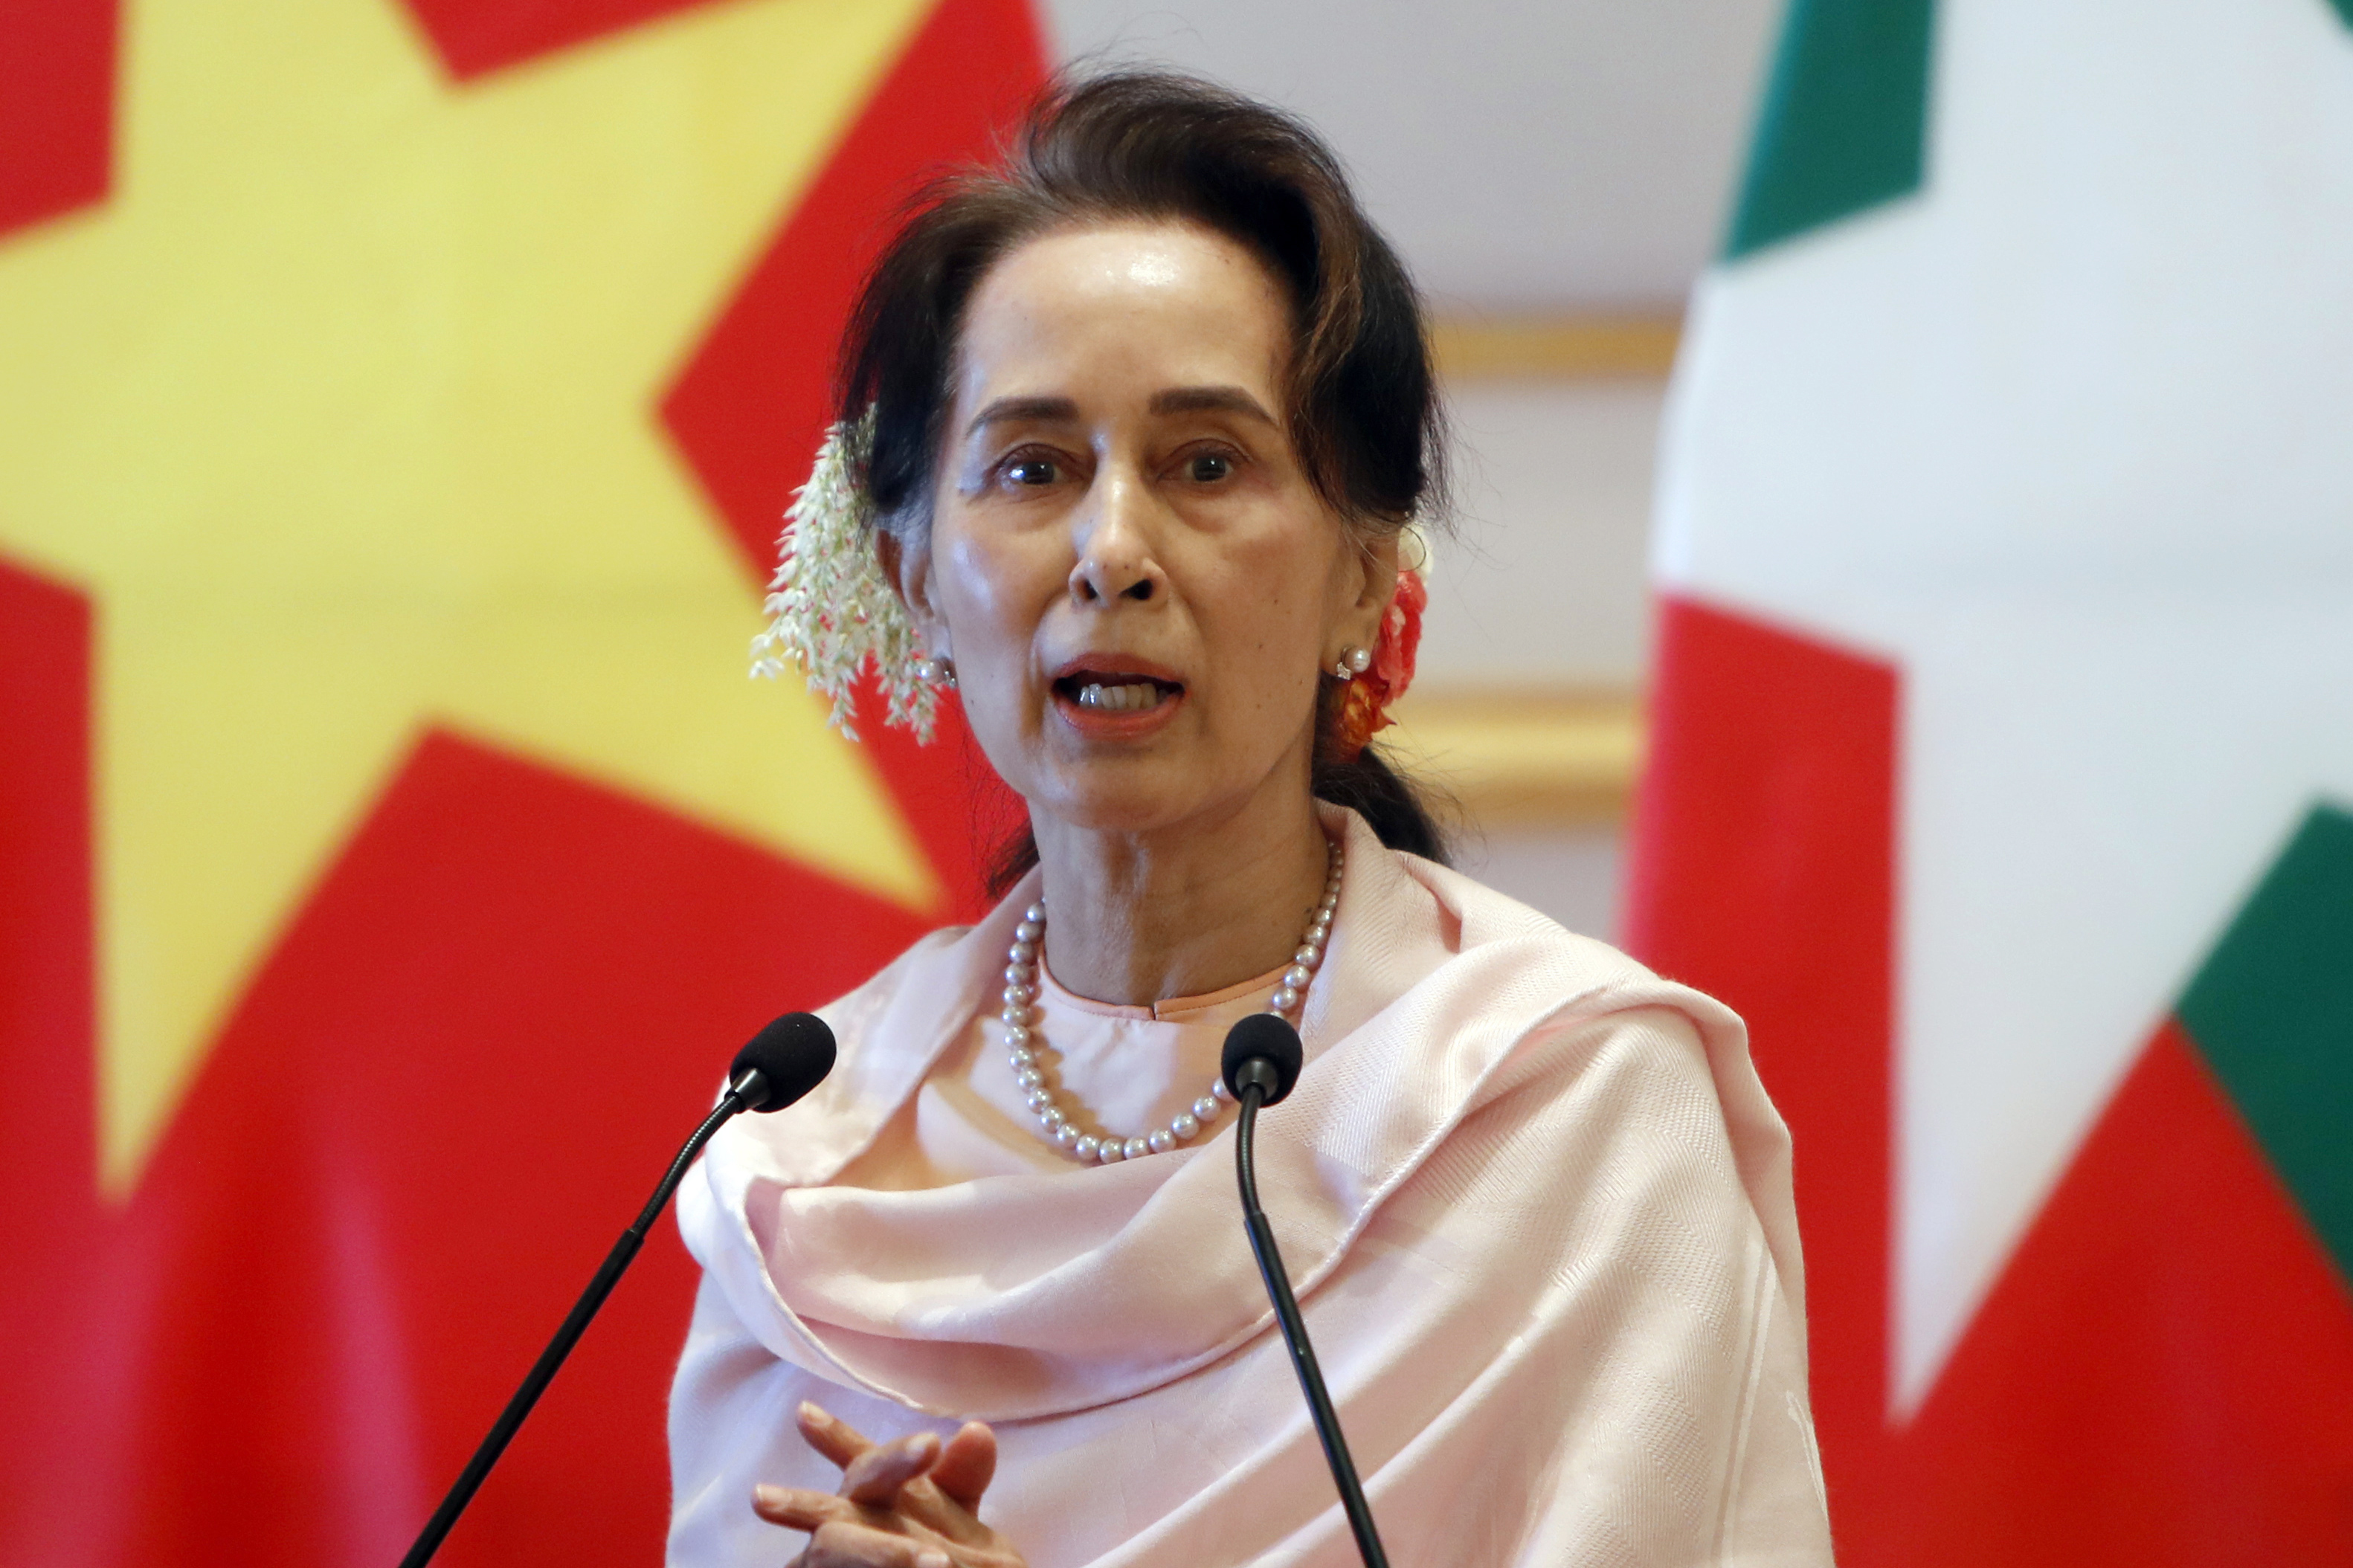 La líder del partido gobernante y premio Nóbel de la Paz, Aung San Suu Kyi, fue detenida en Myanmar. Foto: AP.